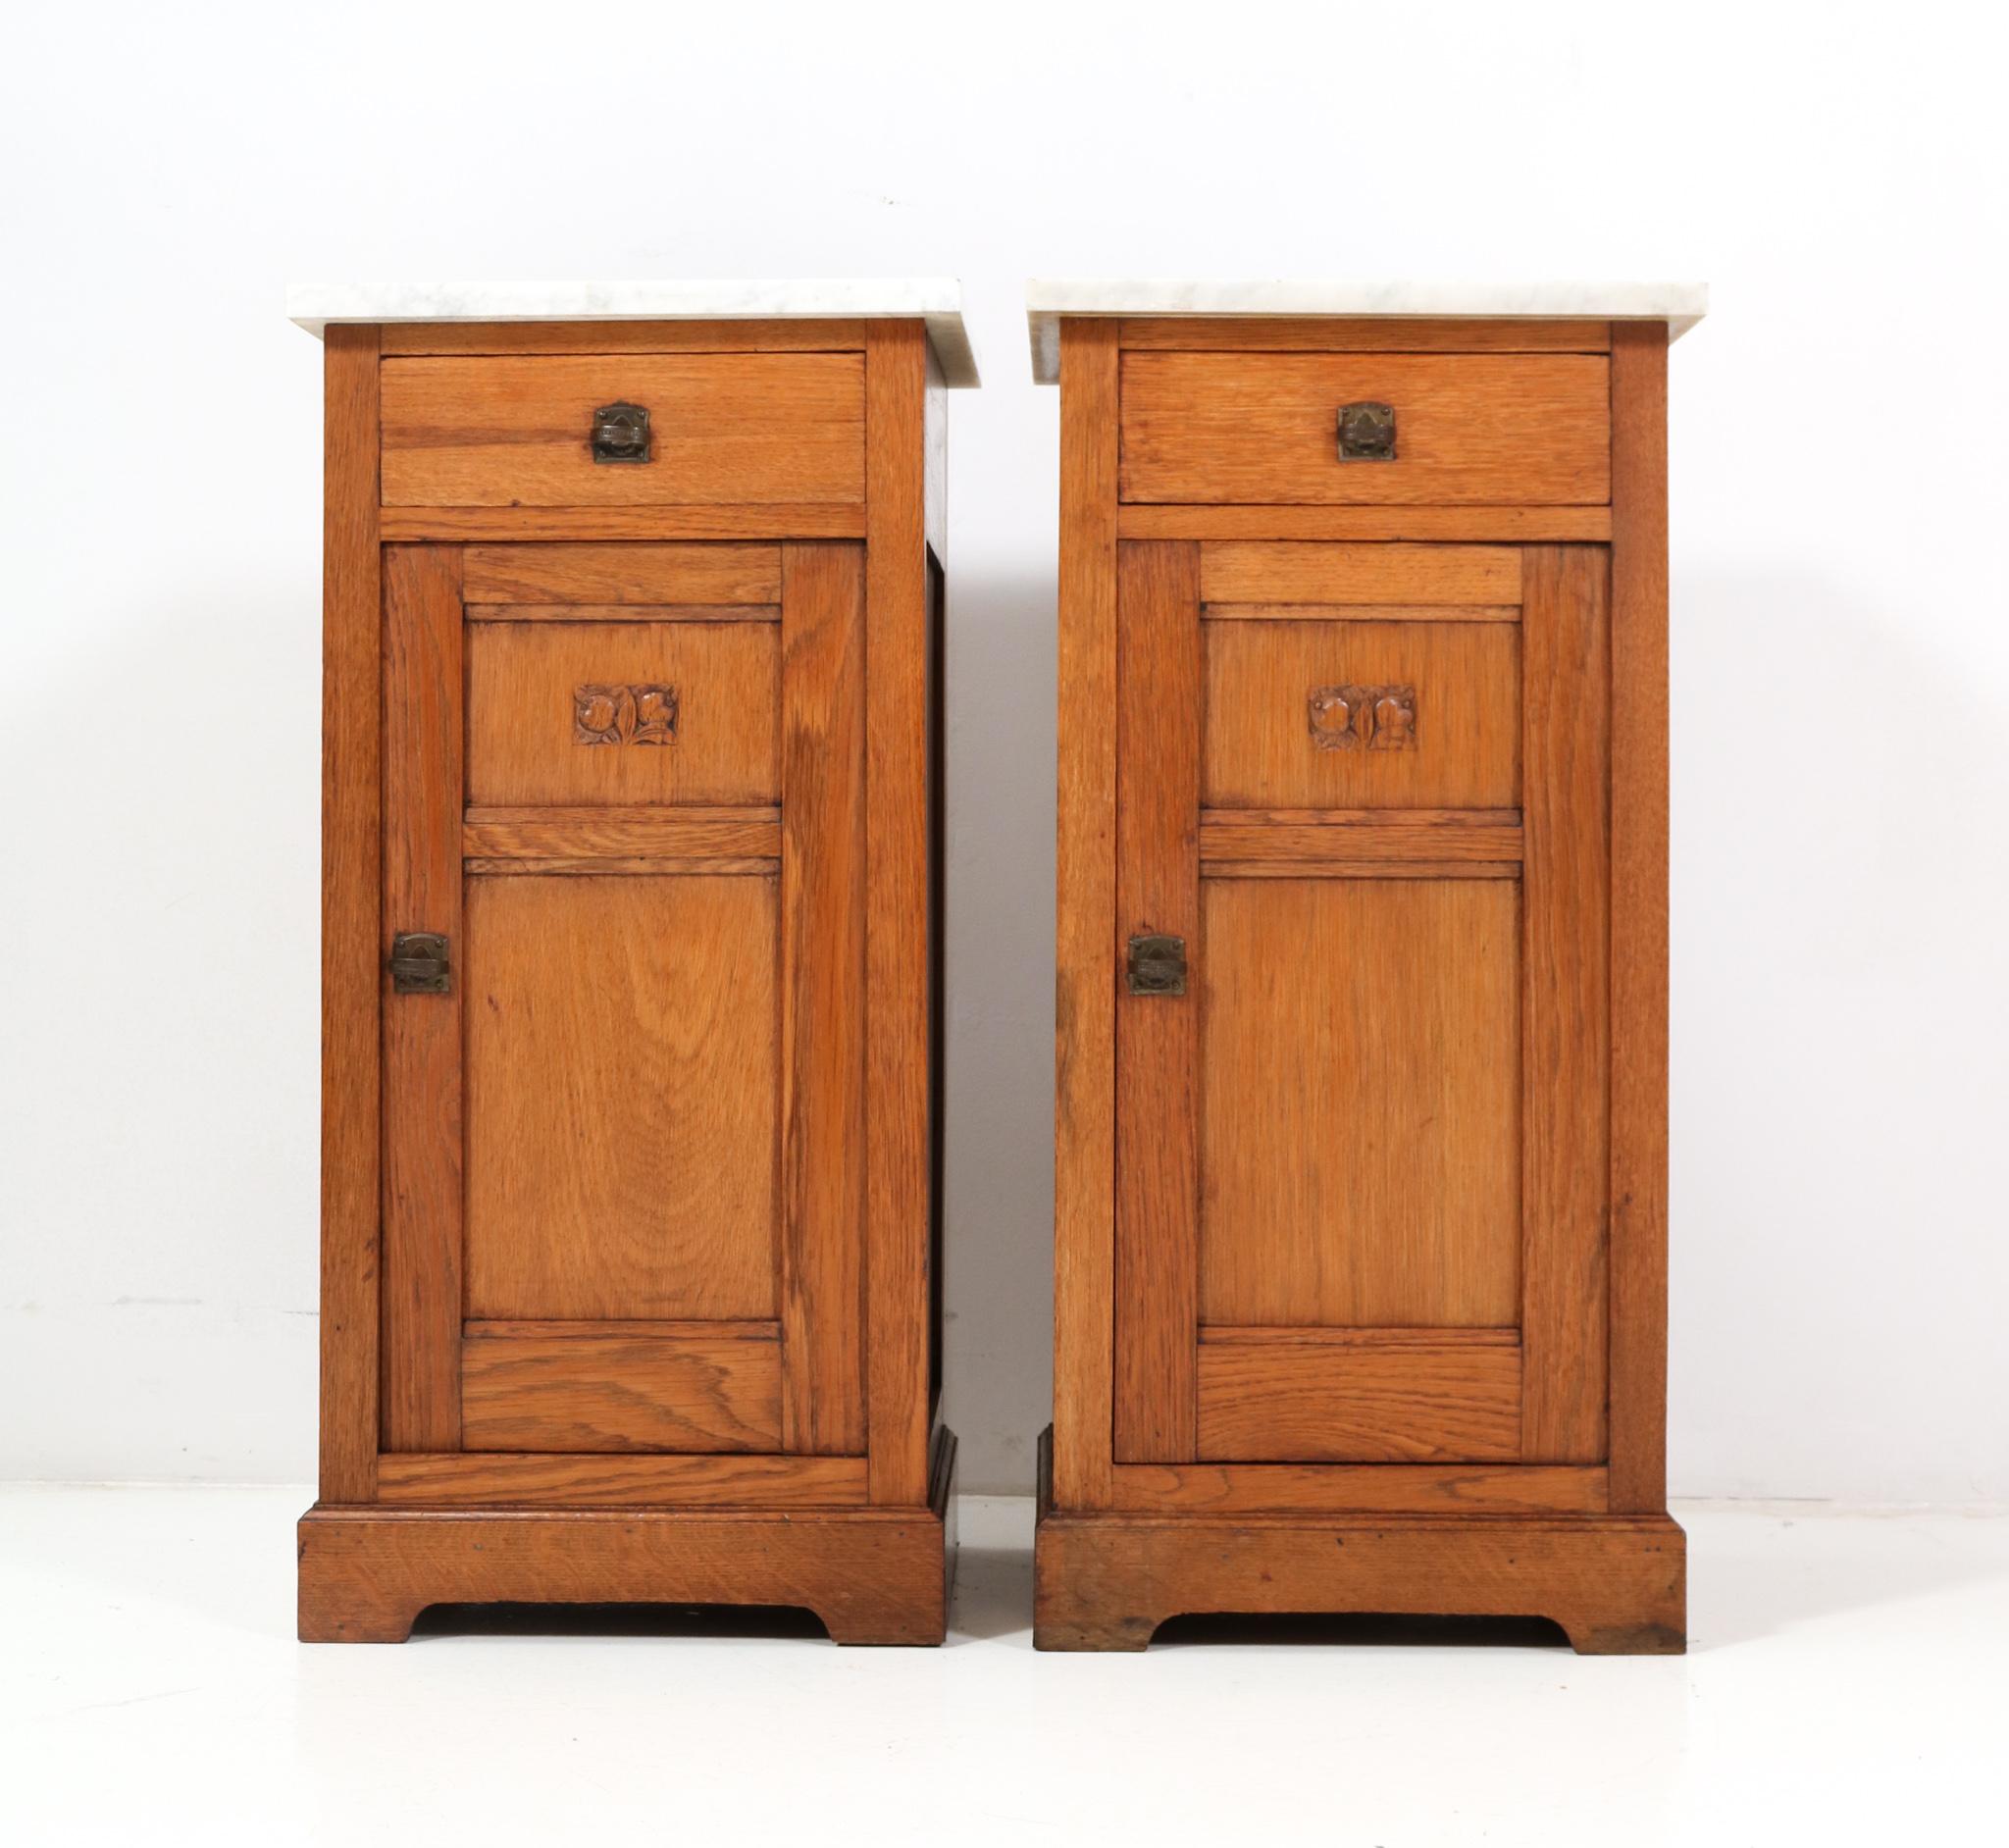 Two Oak Art Nouveau Jugendstil Nightstands or Bedside Tables, 1900s For Sale 2